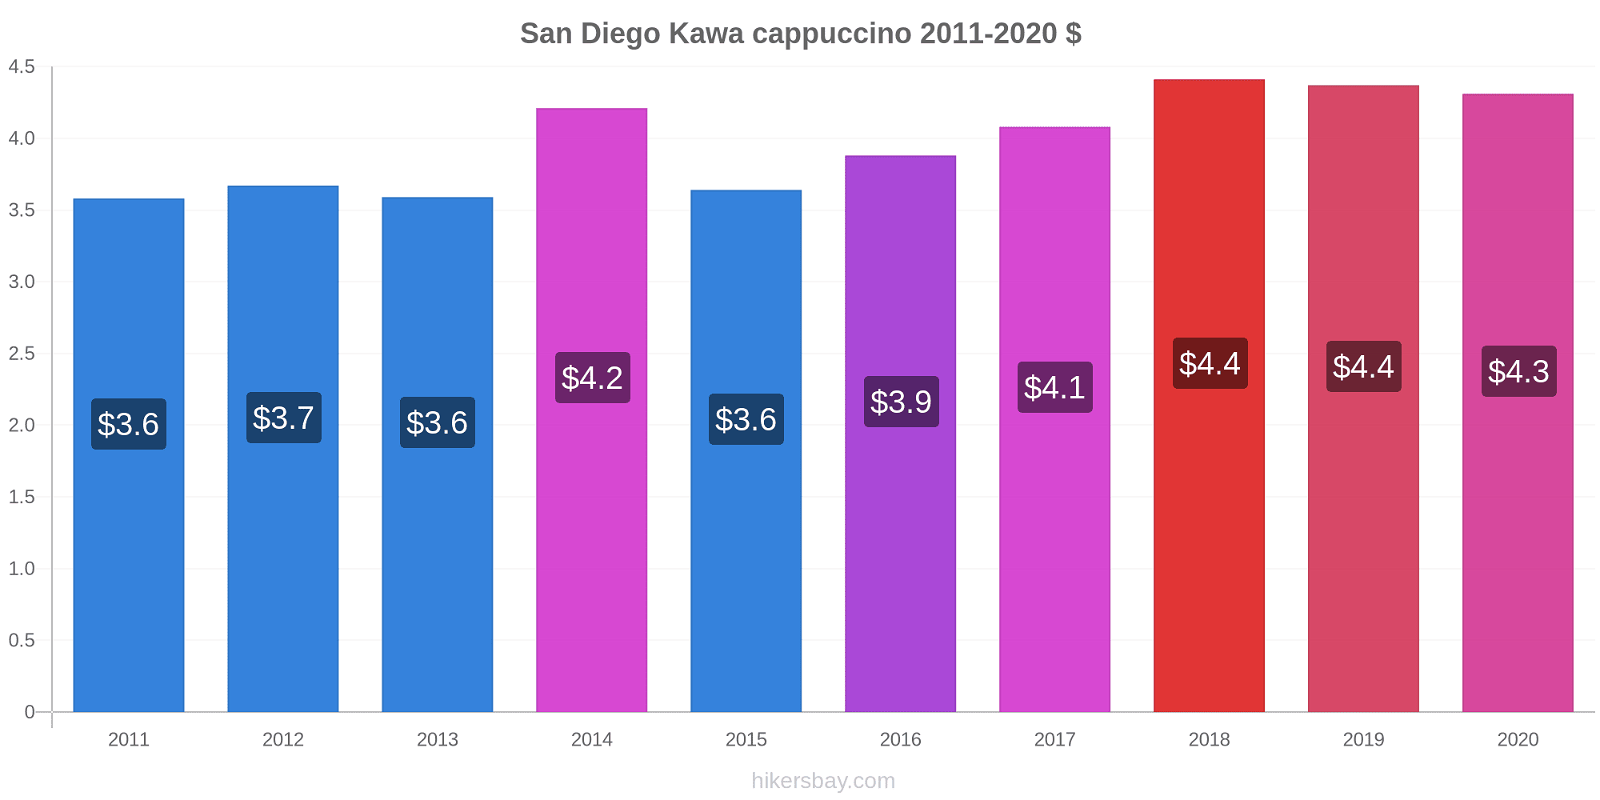 San Diego zmiany cen Kawa cappuccino hikersbay.com